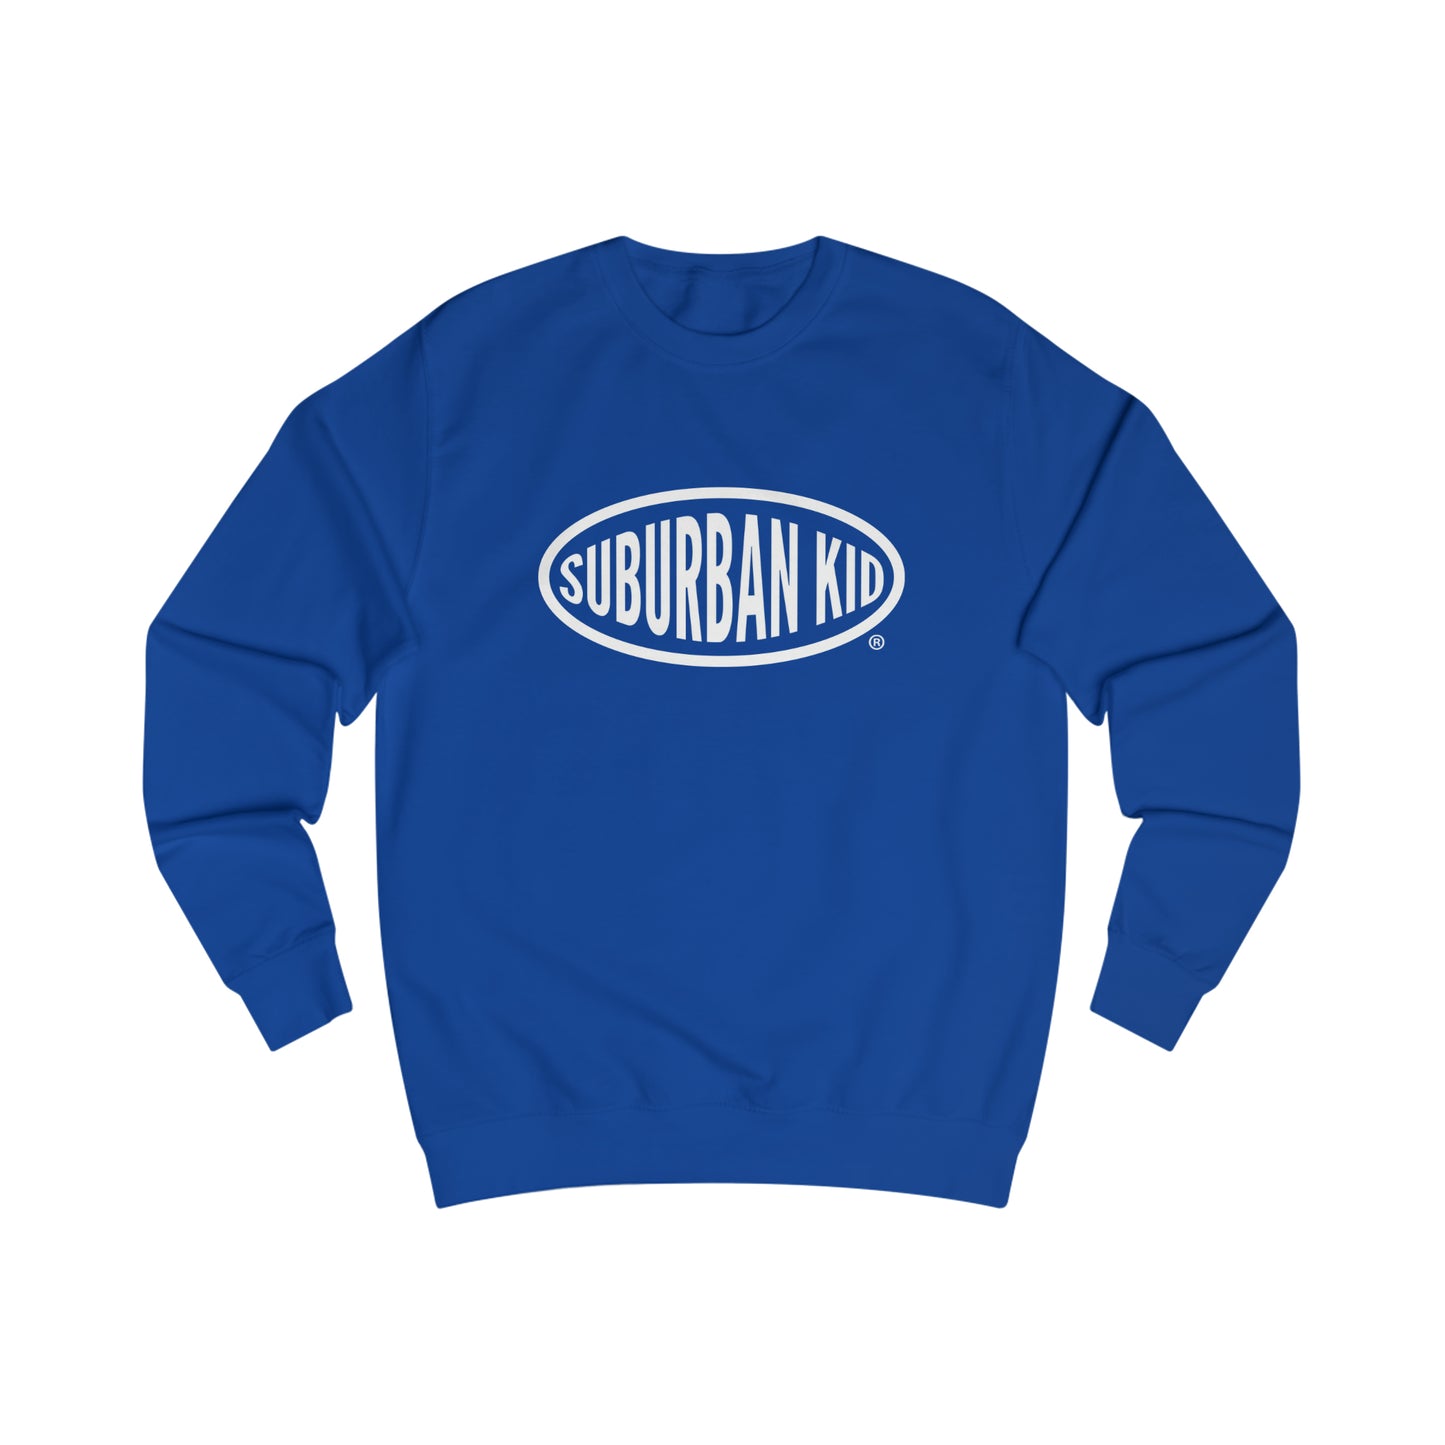 Suburban Kid Crewneck Sweatshirt